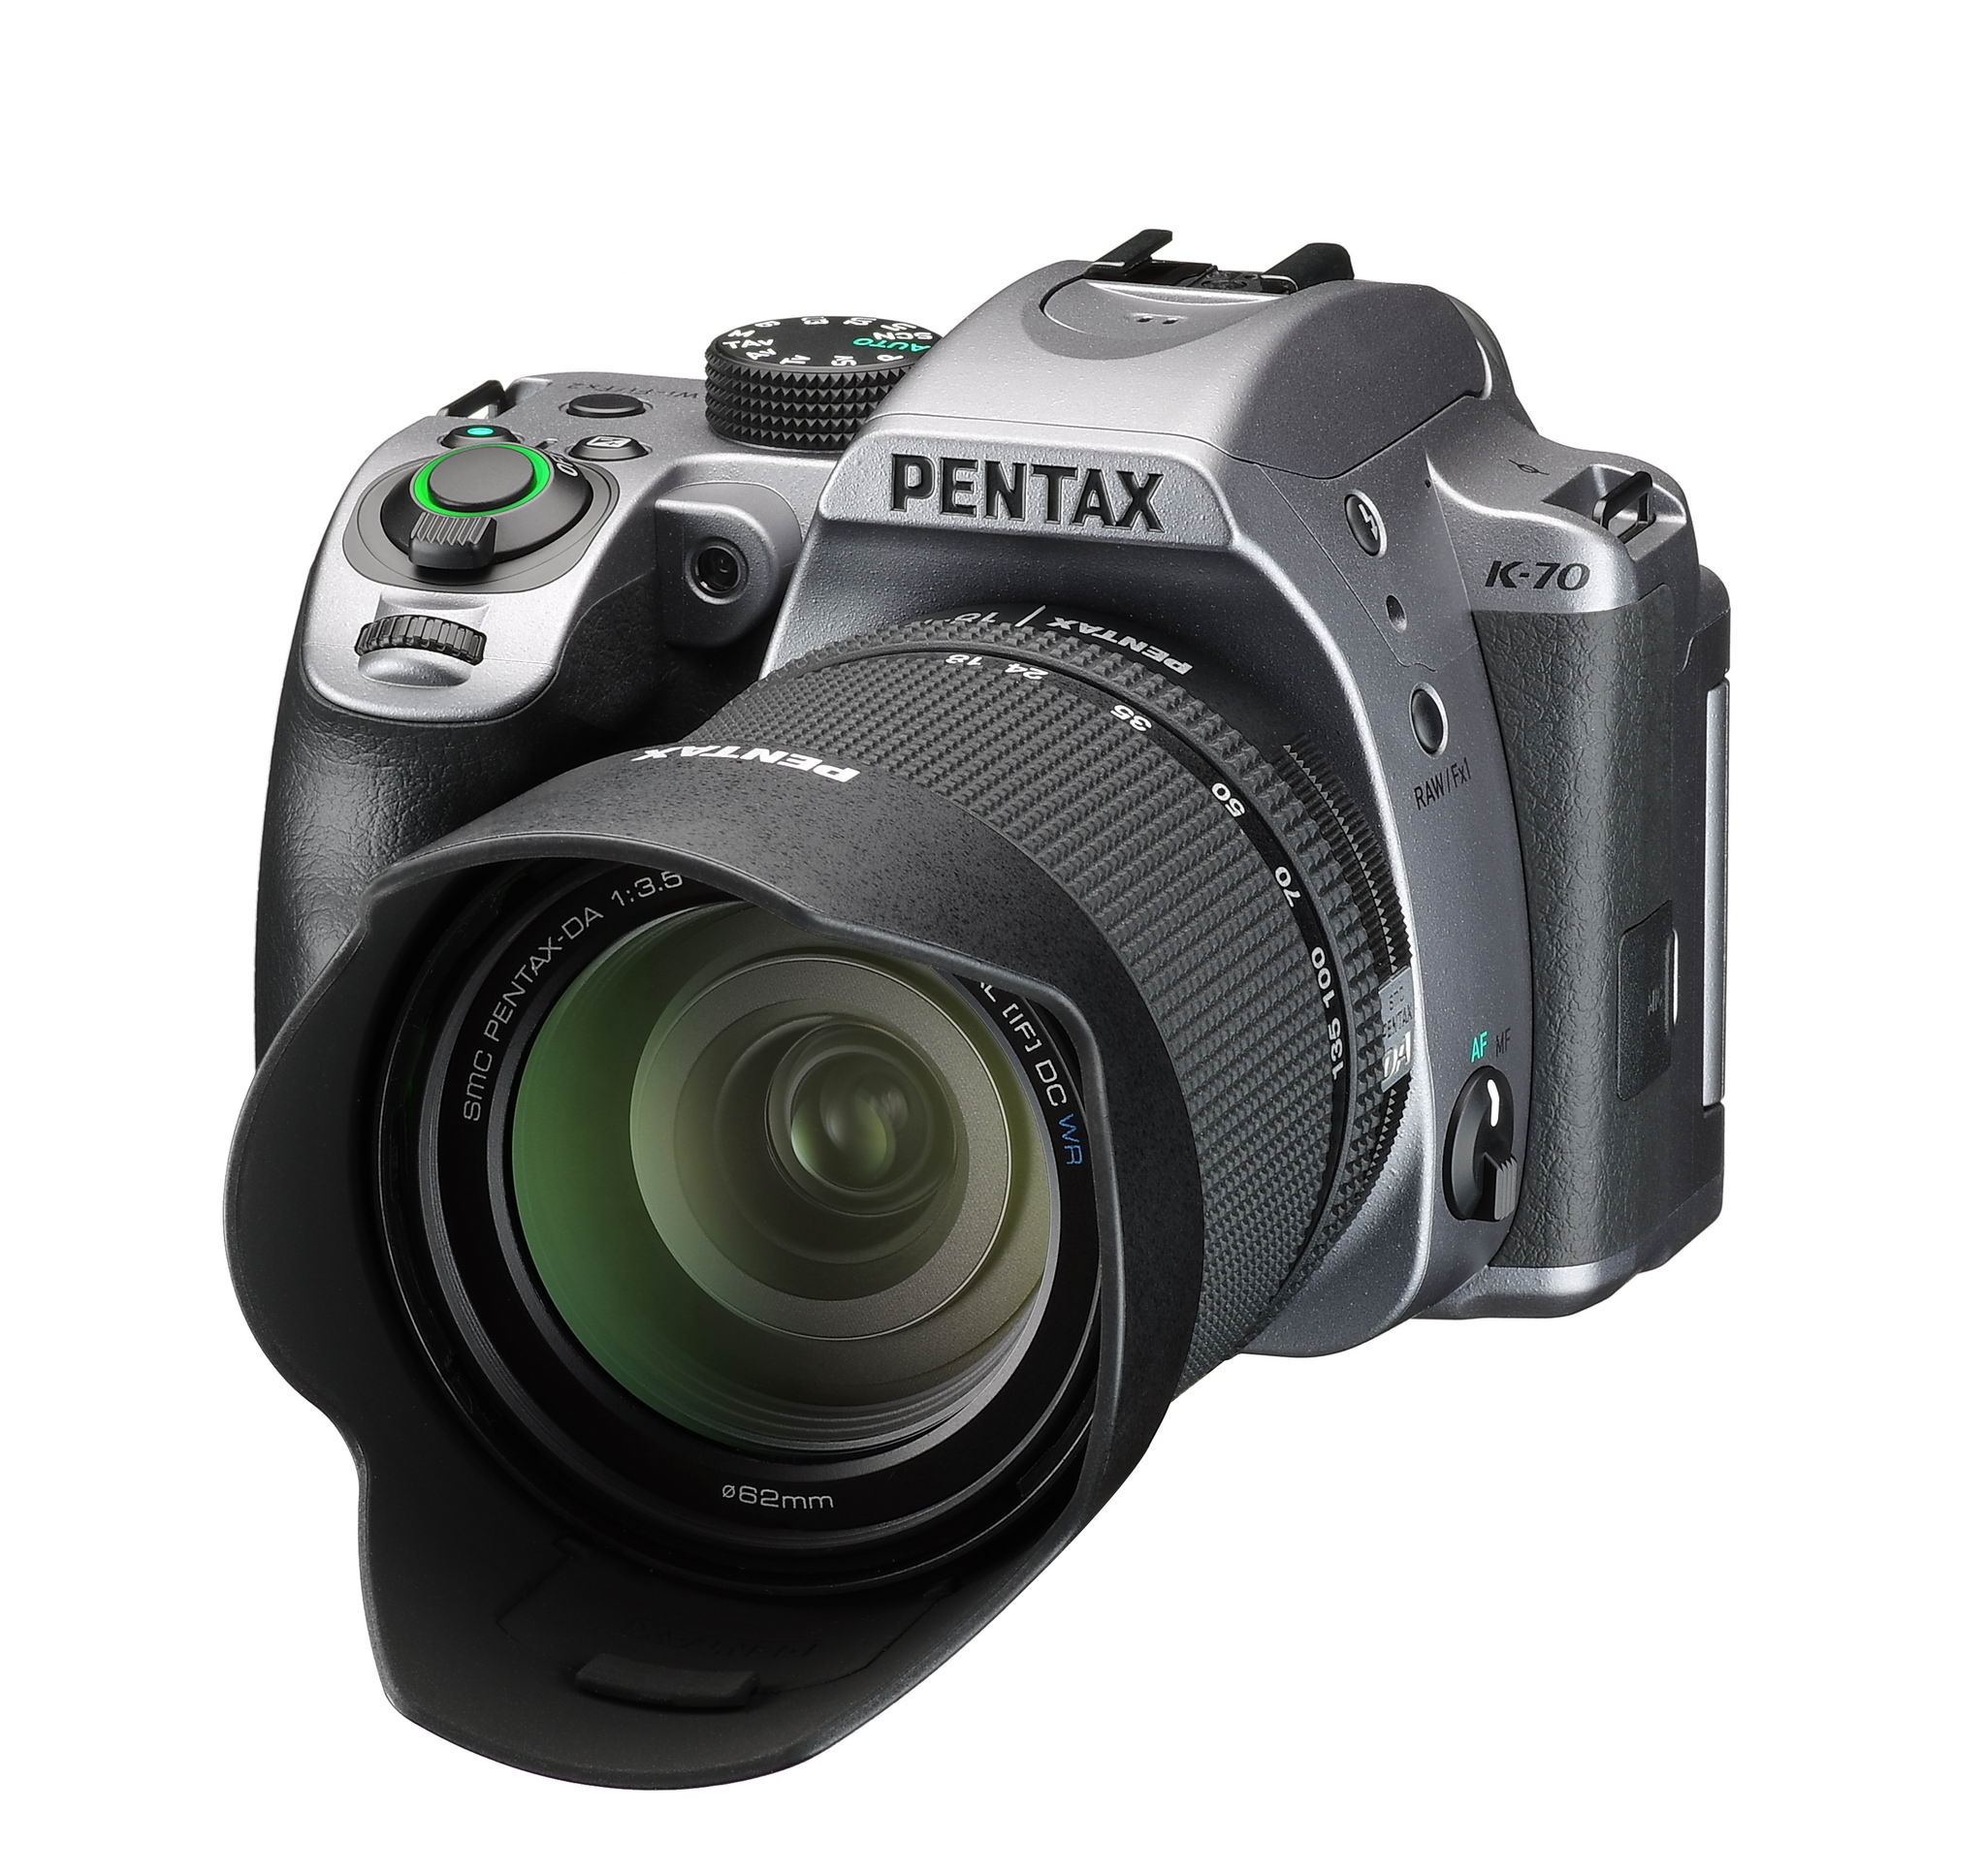 アウトドア撮影に適したデジタル一眼レフカメラ「PENTAX K-70」を新